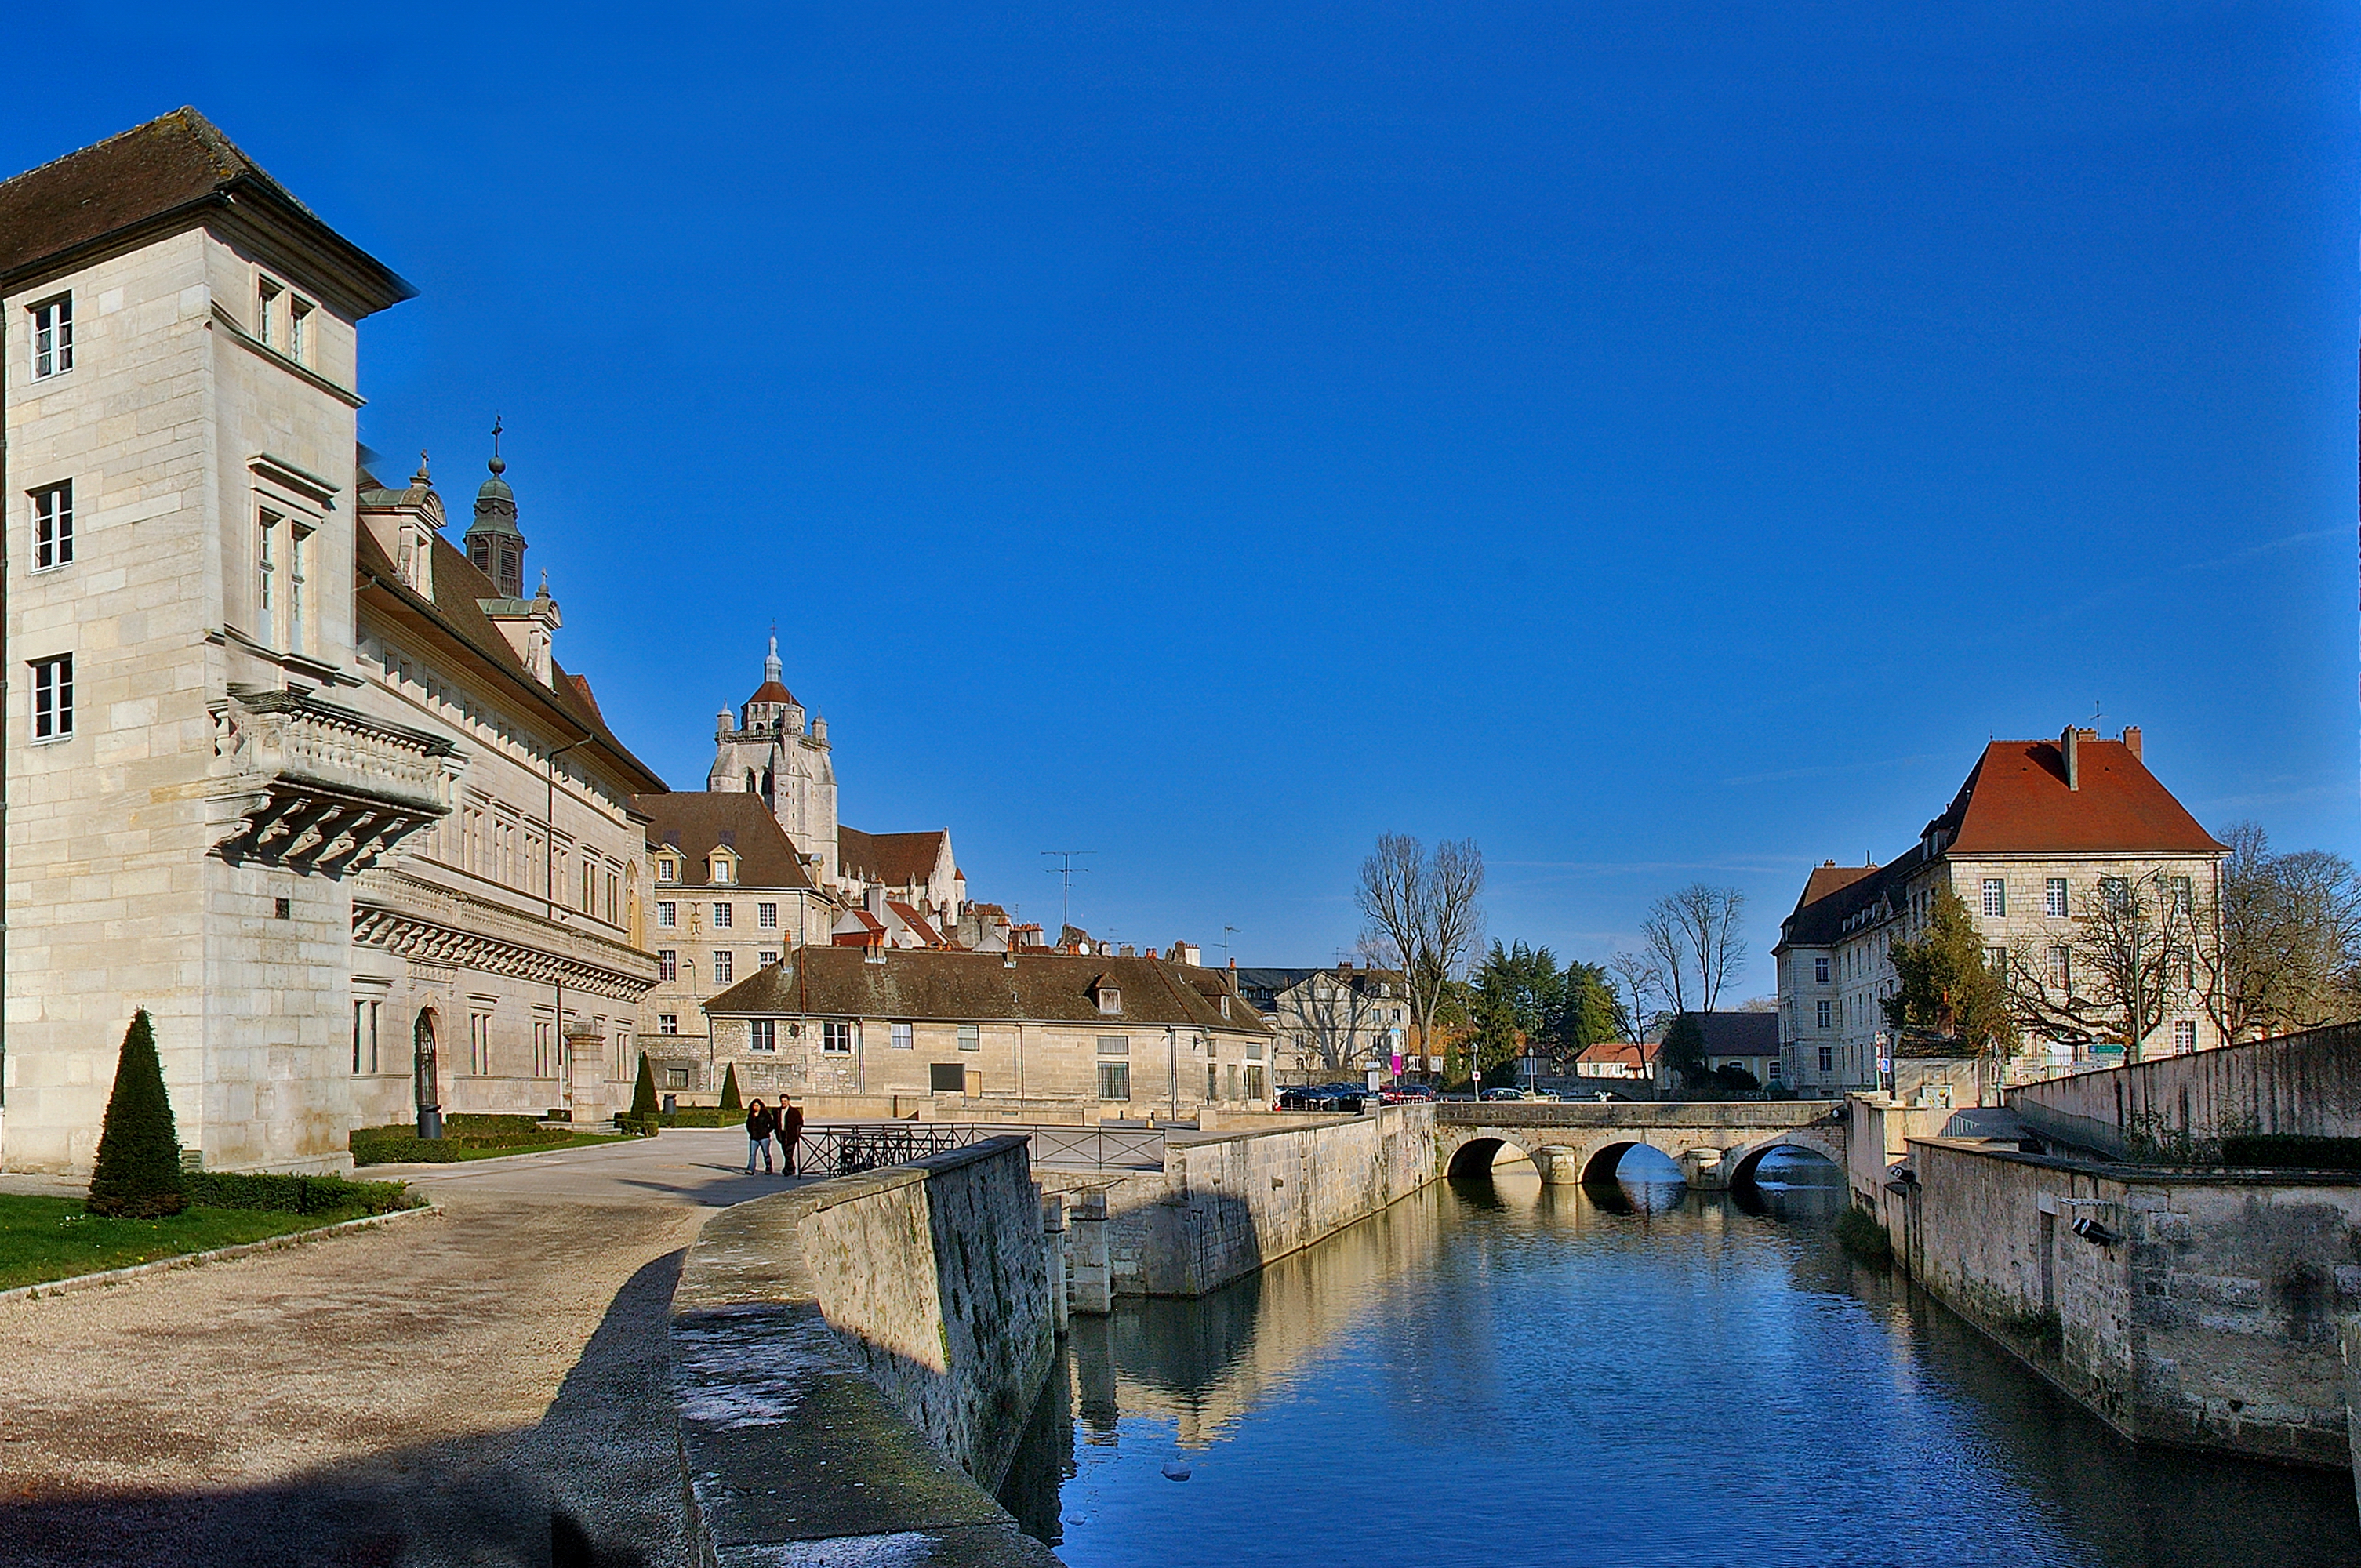 grand monument de renaissance en face du canal avec un beau ciel bleu